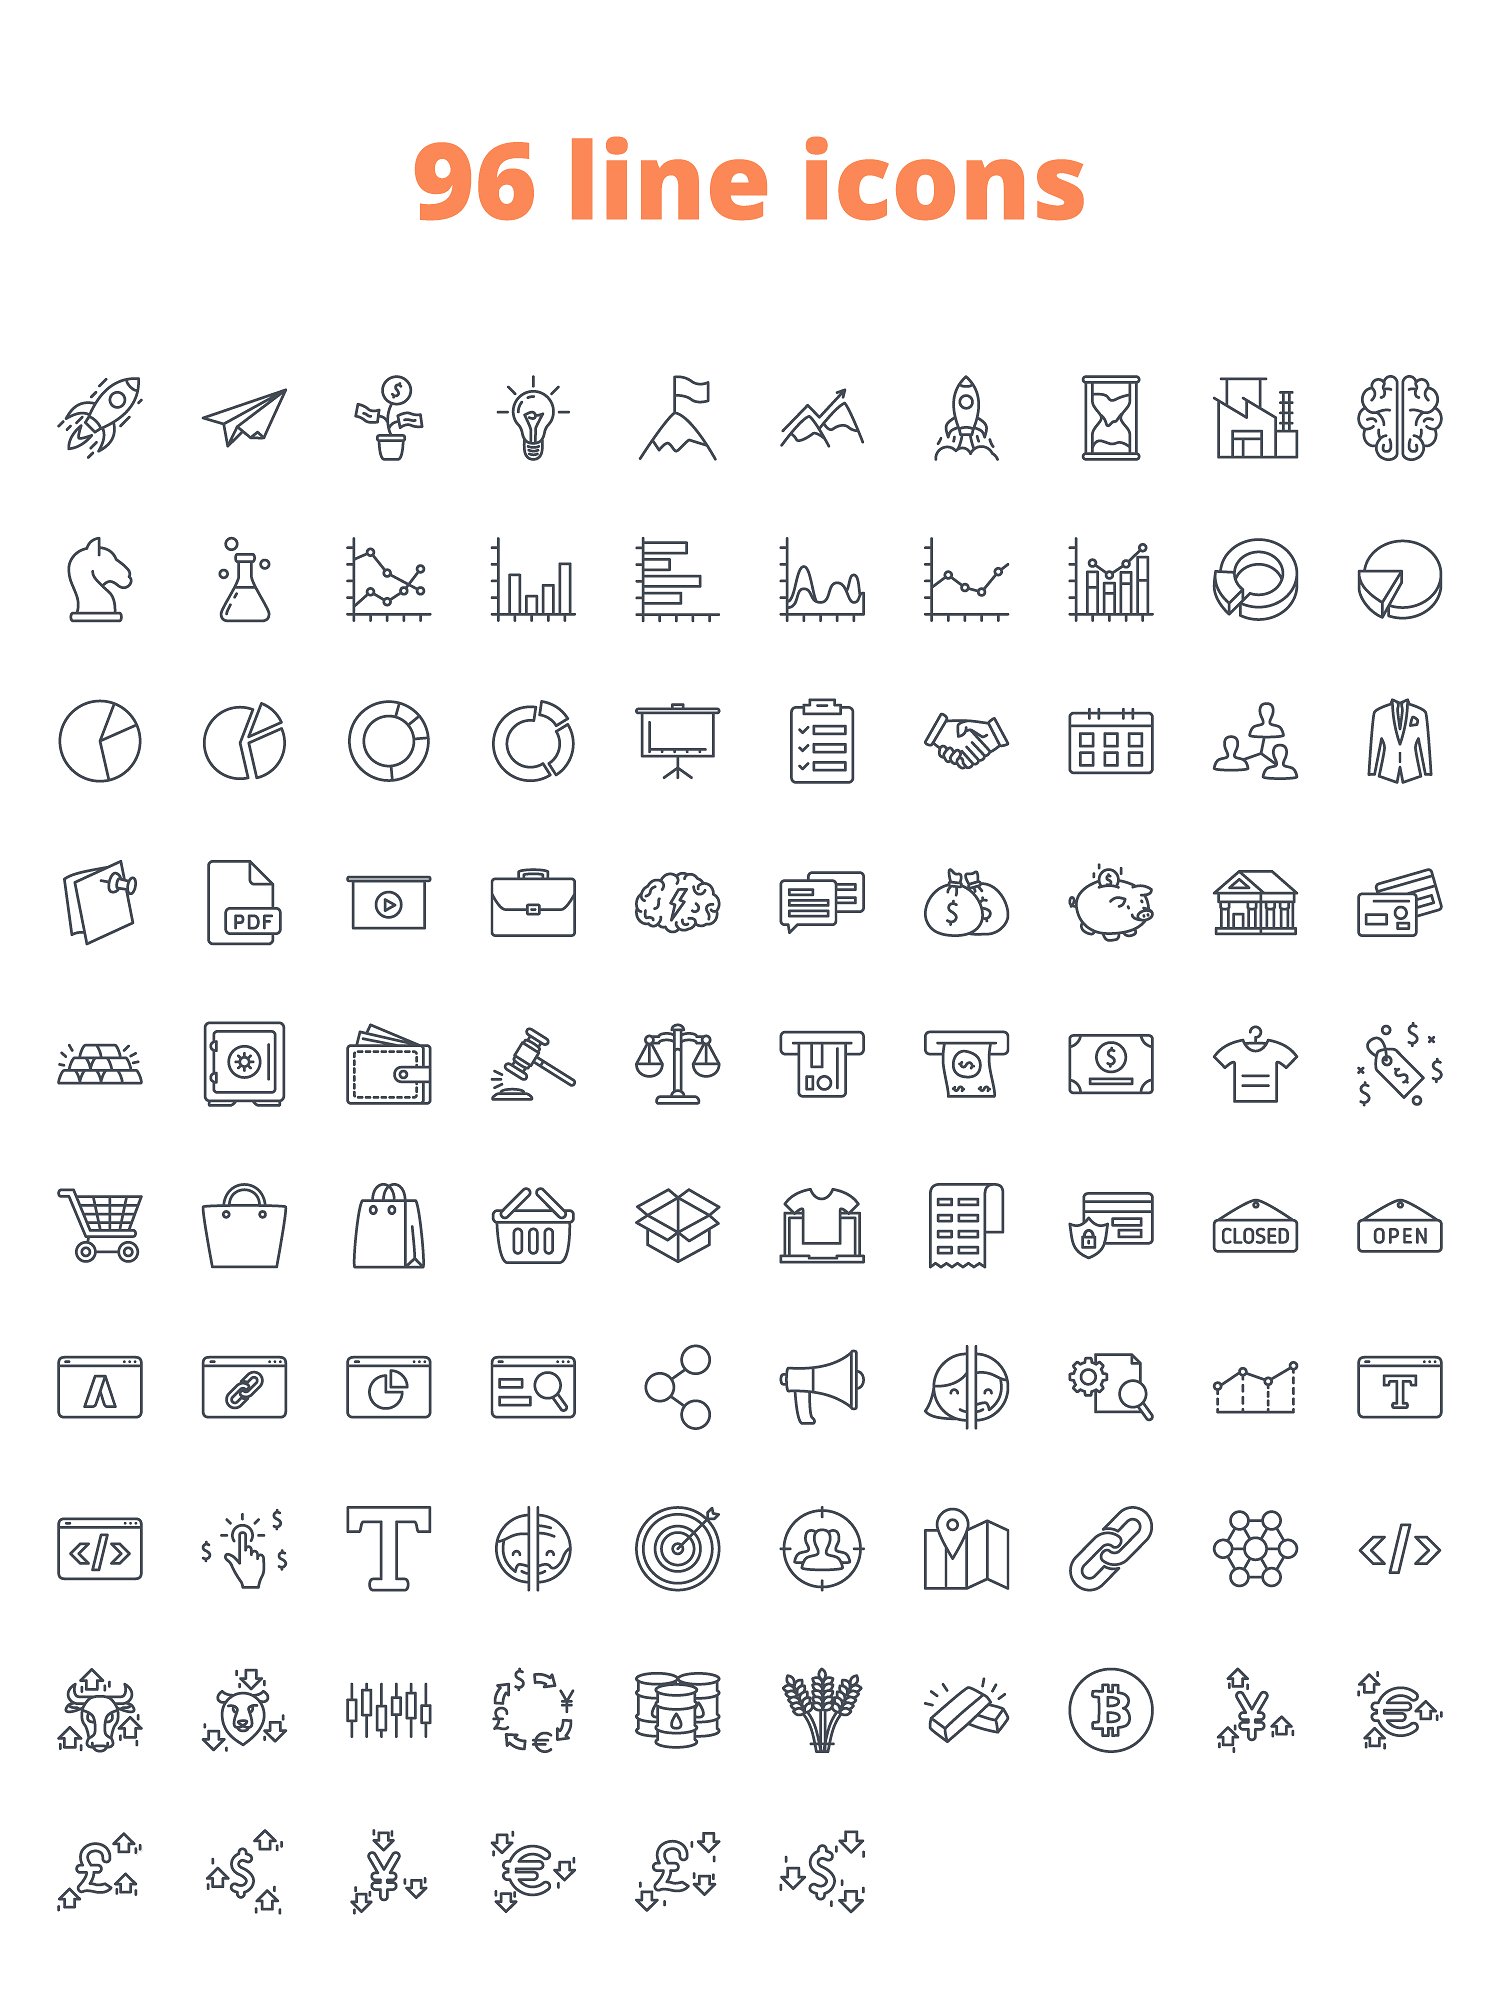 288枚企业主题图标 288 Business Icons（三种风格）插图(5)